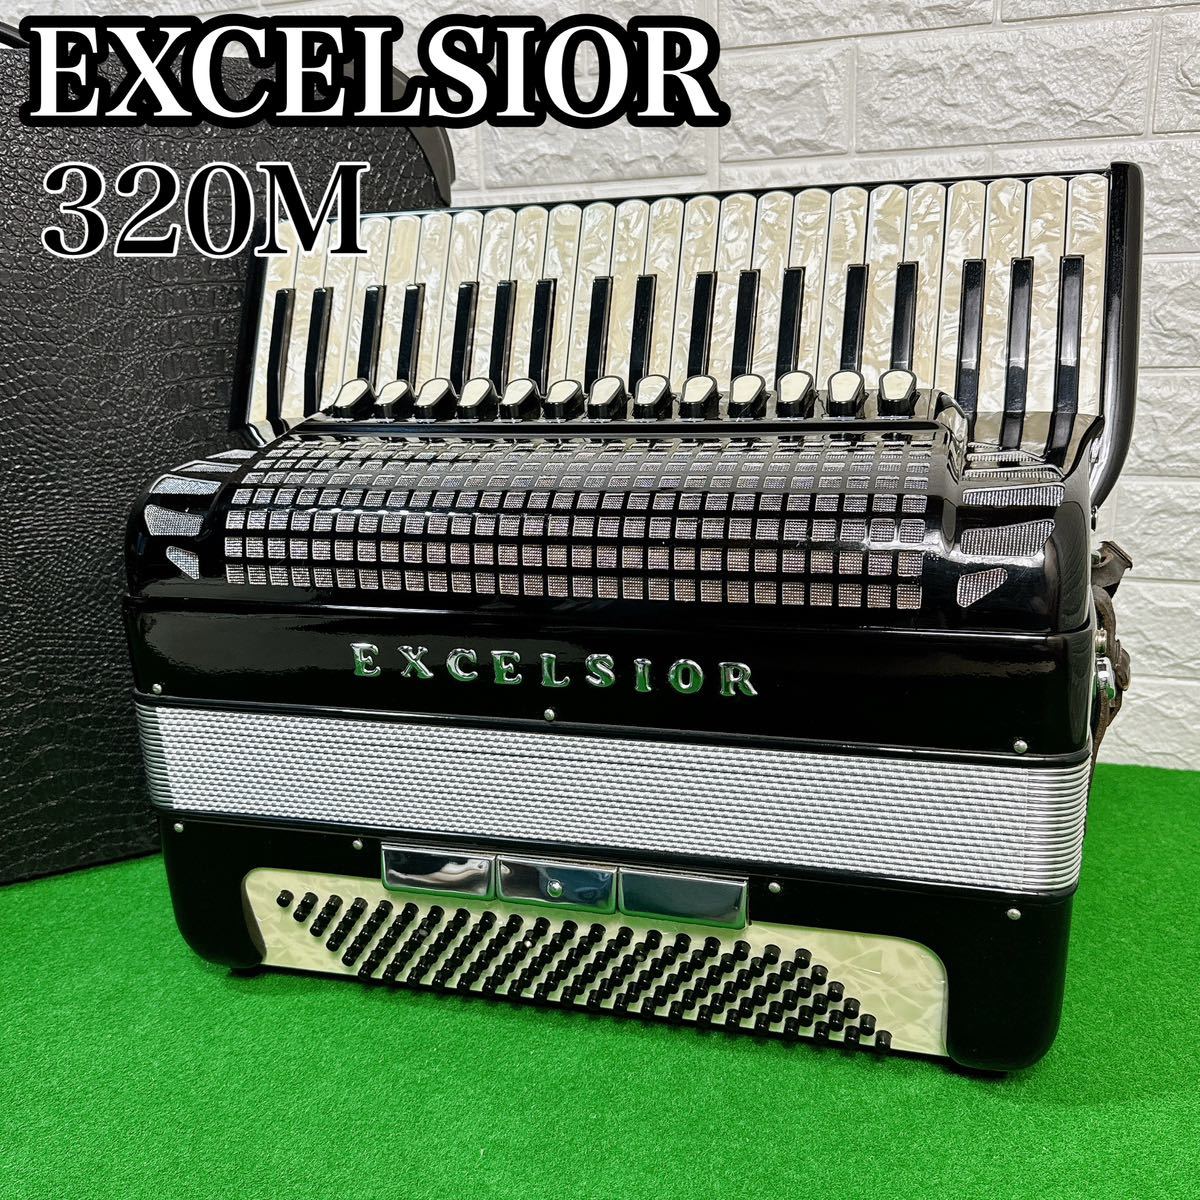 EXCELSIOR エキセルシャー 蛇腹楽器 アコーディオン 41鍵盤 120ベース 320M クロコダイル調 ハードケース キャスター付き ブラック_画像1